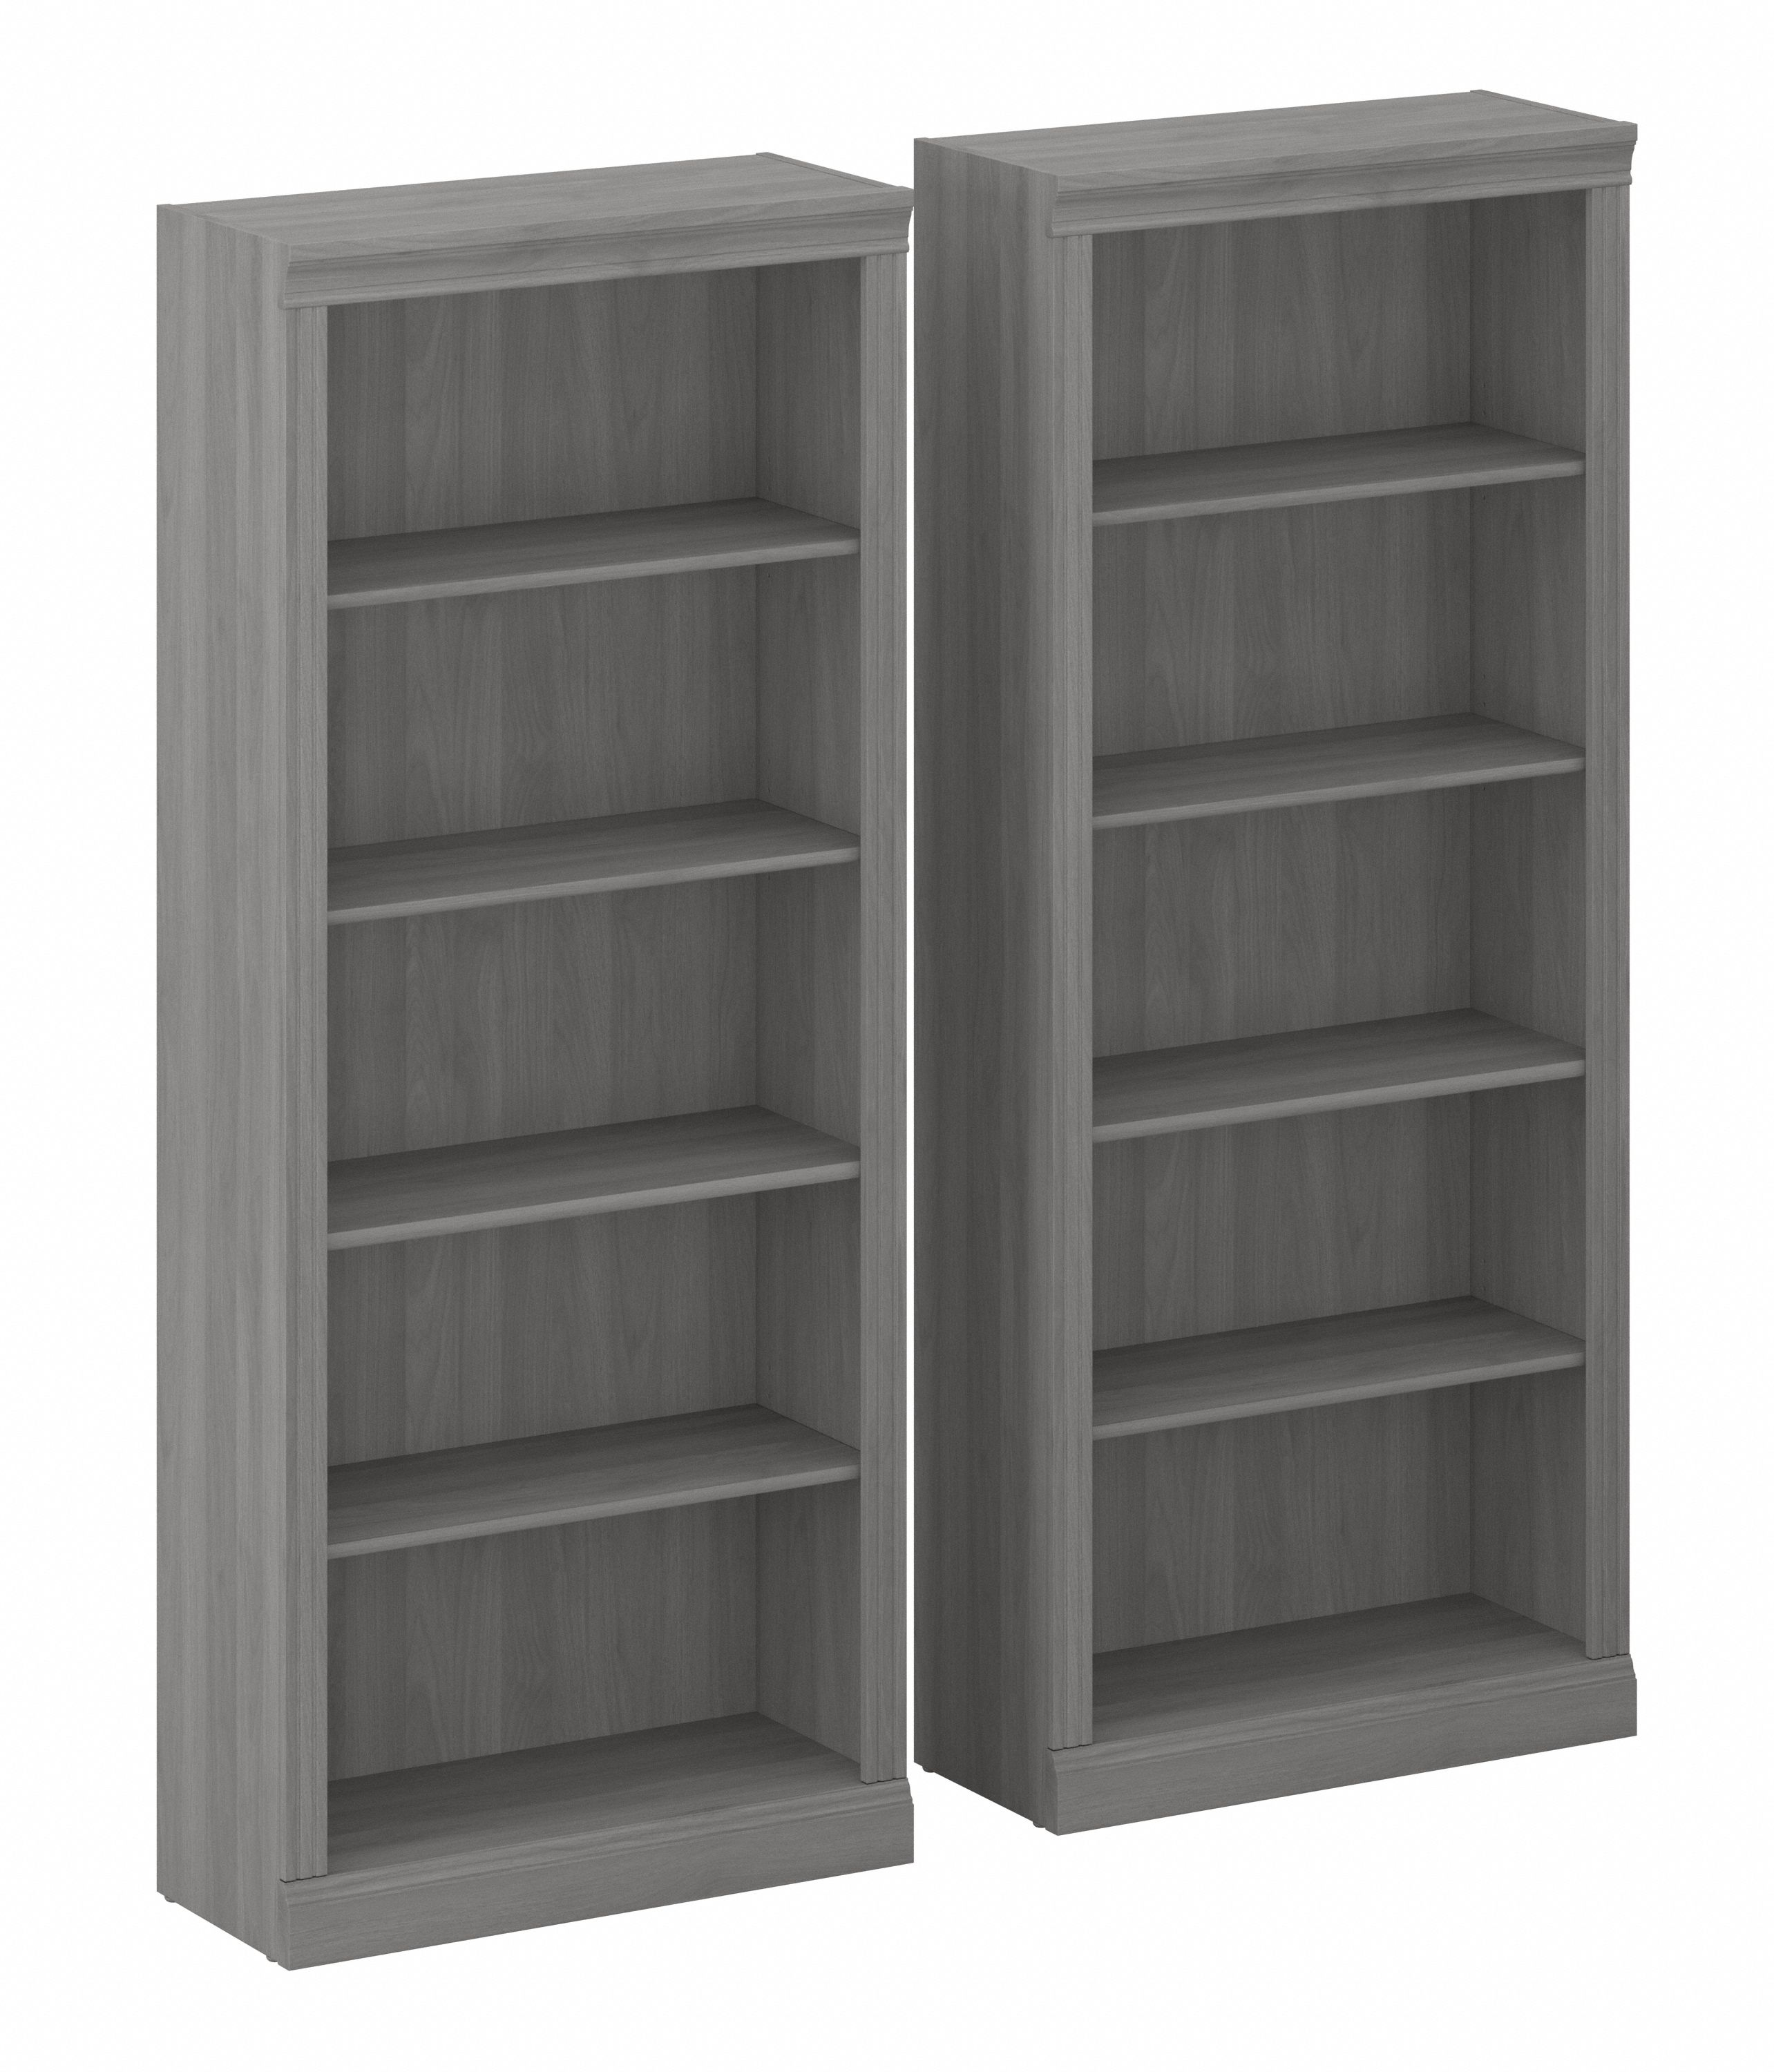 Shop Bush Furniture Saratoga Tall 5 Shelf Bookcase - Set of 2 02 SAR008MG #color_modern gray